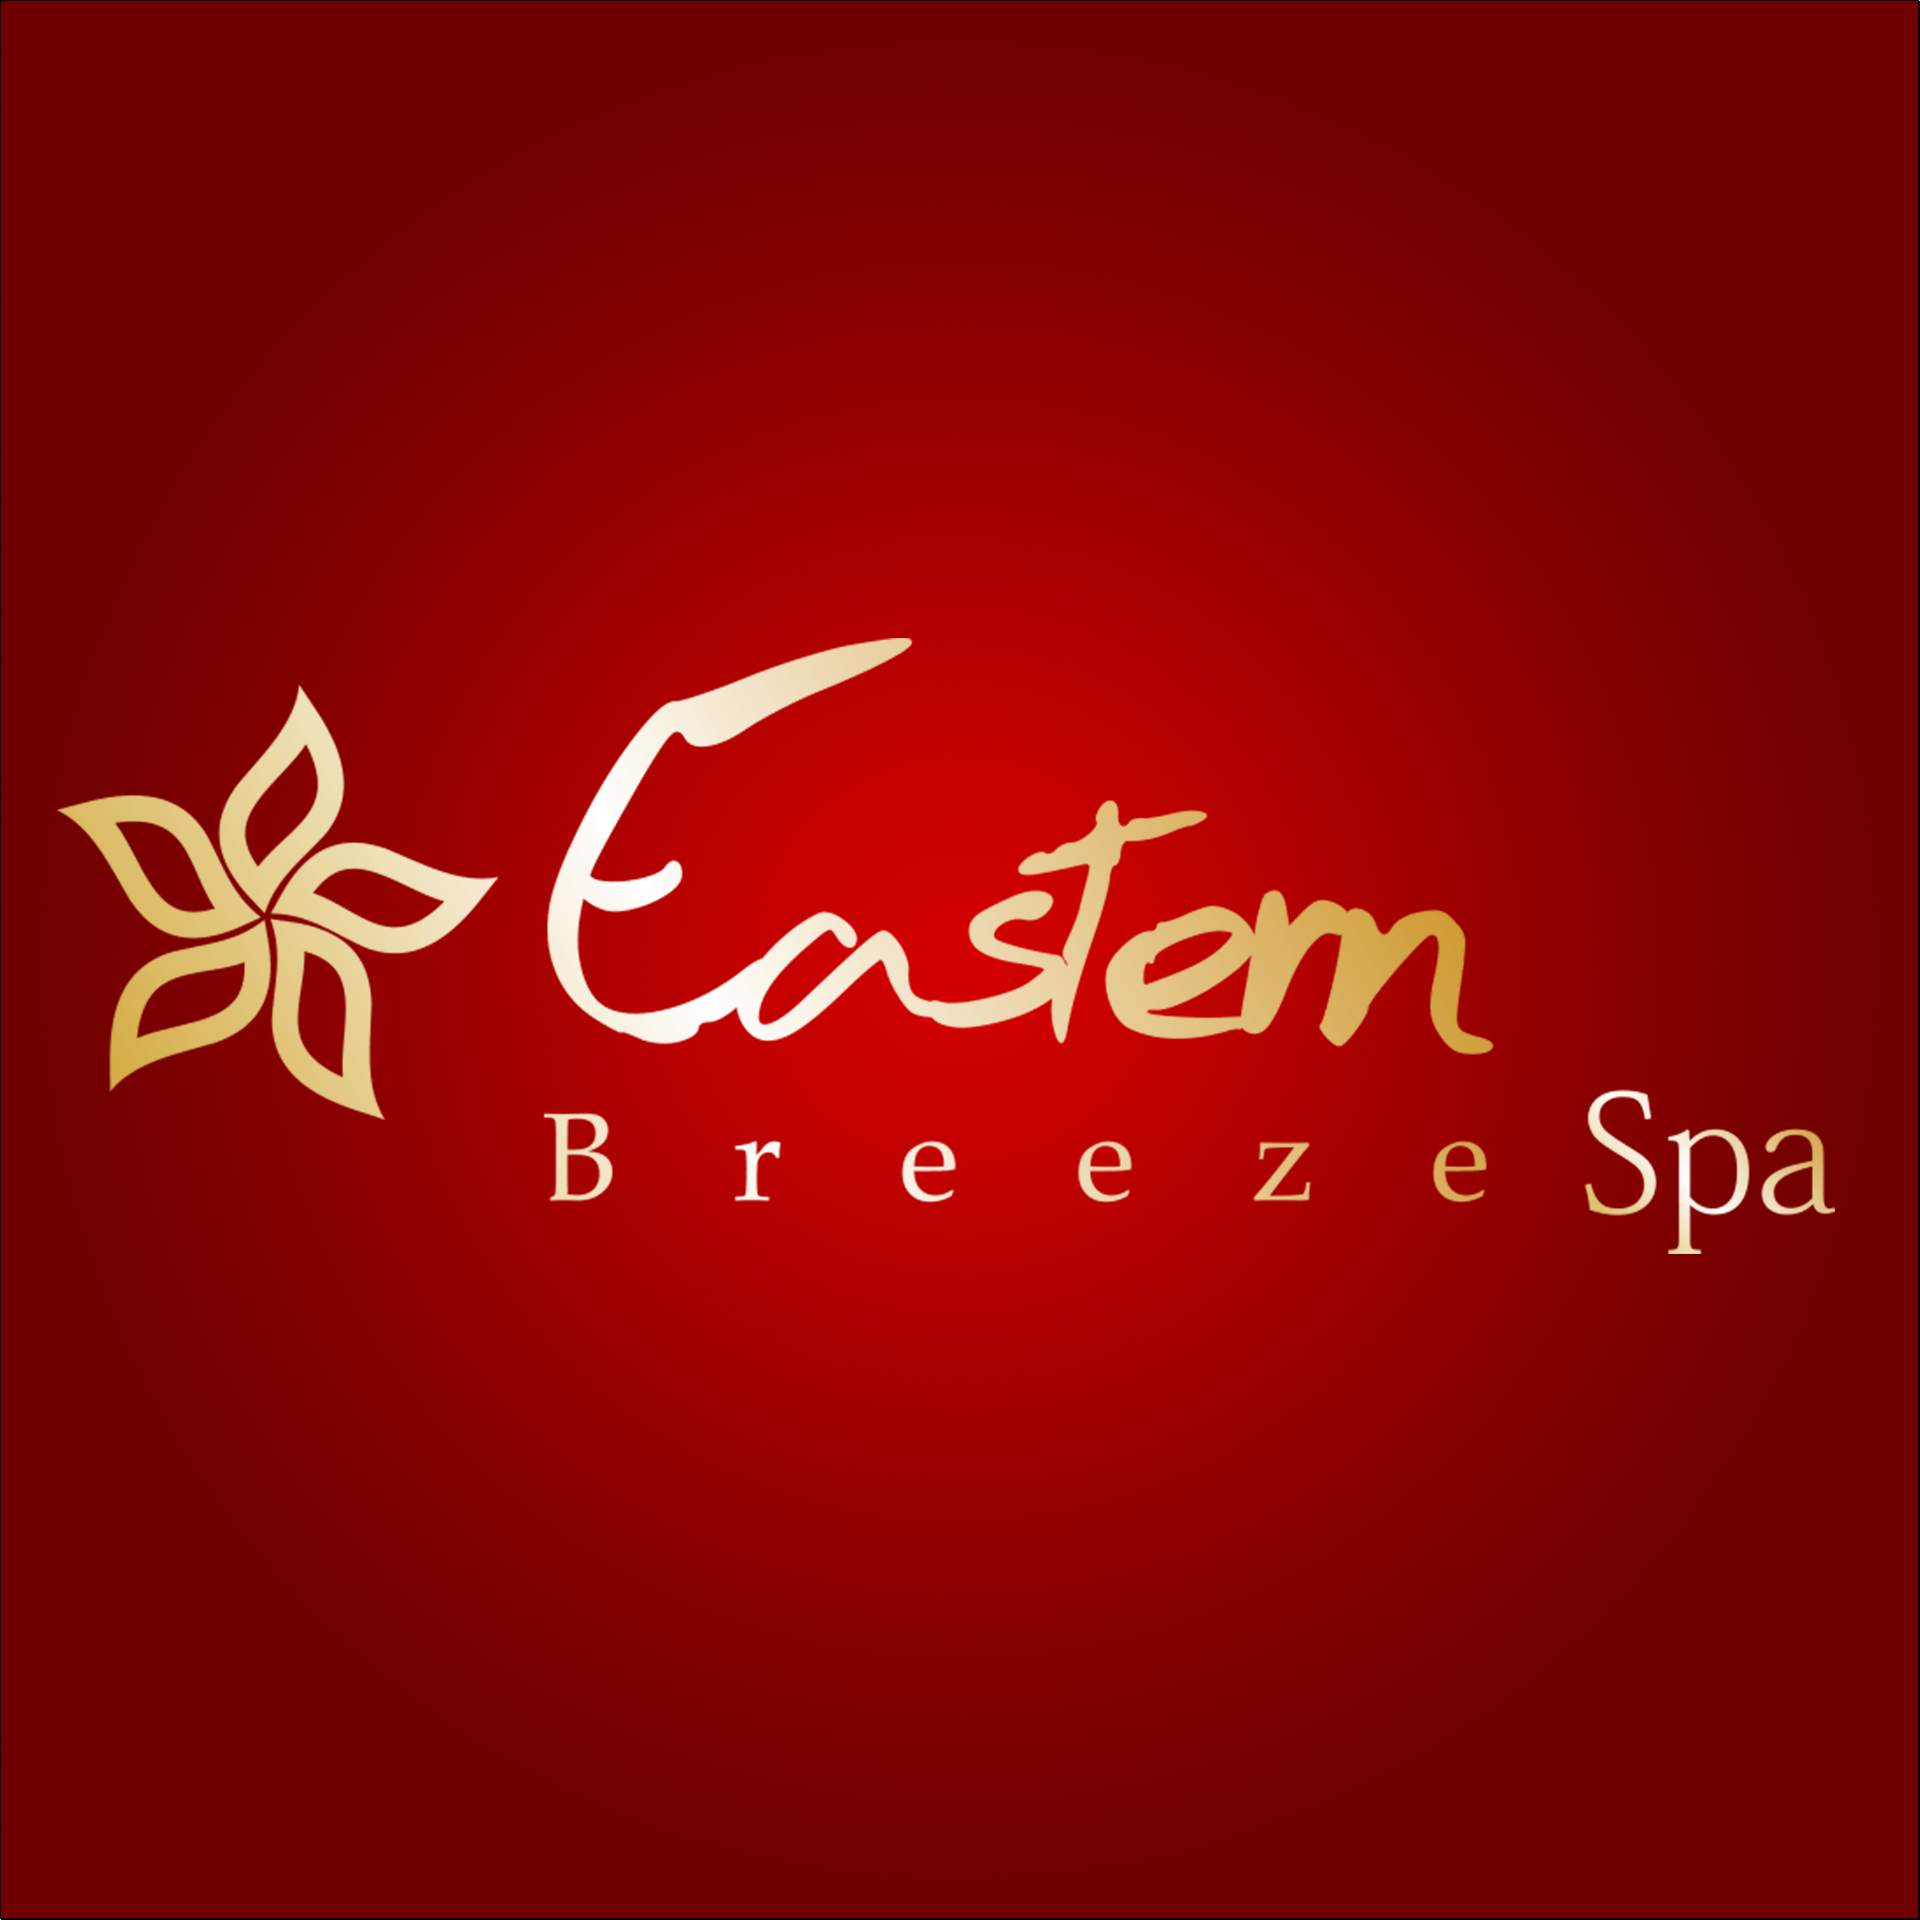 Eastern Breeze Spa - Long Island's Luxury Day Spa & Salon